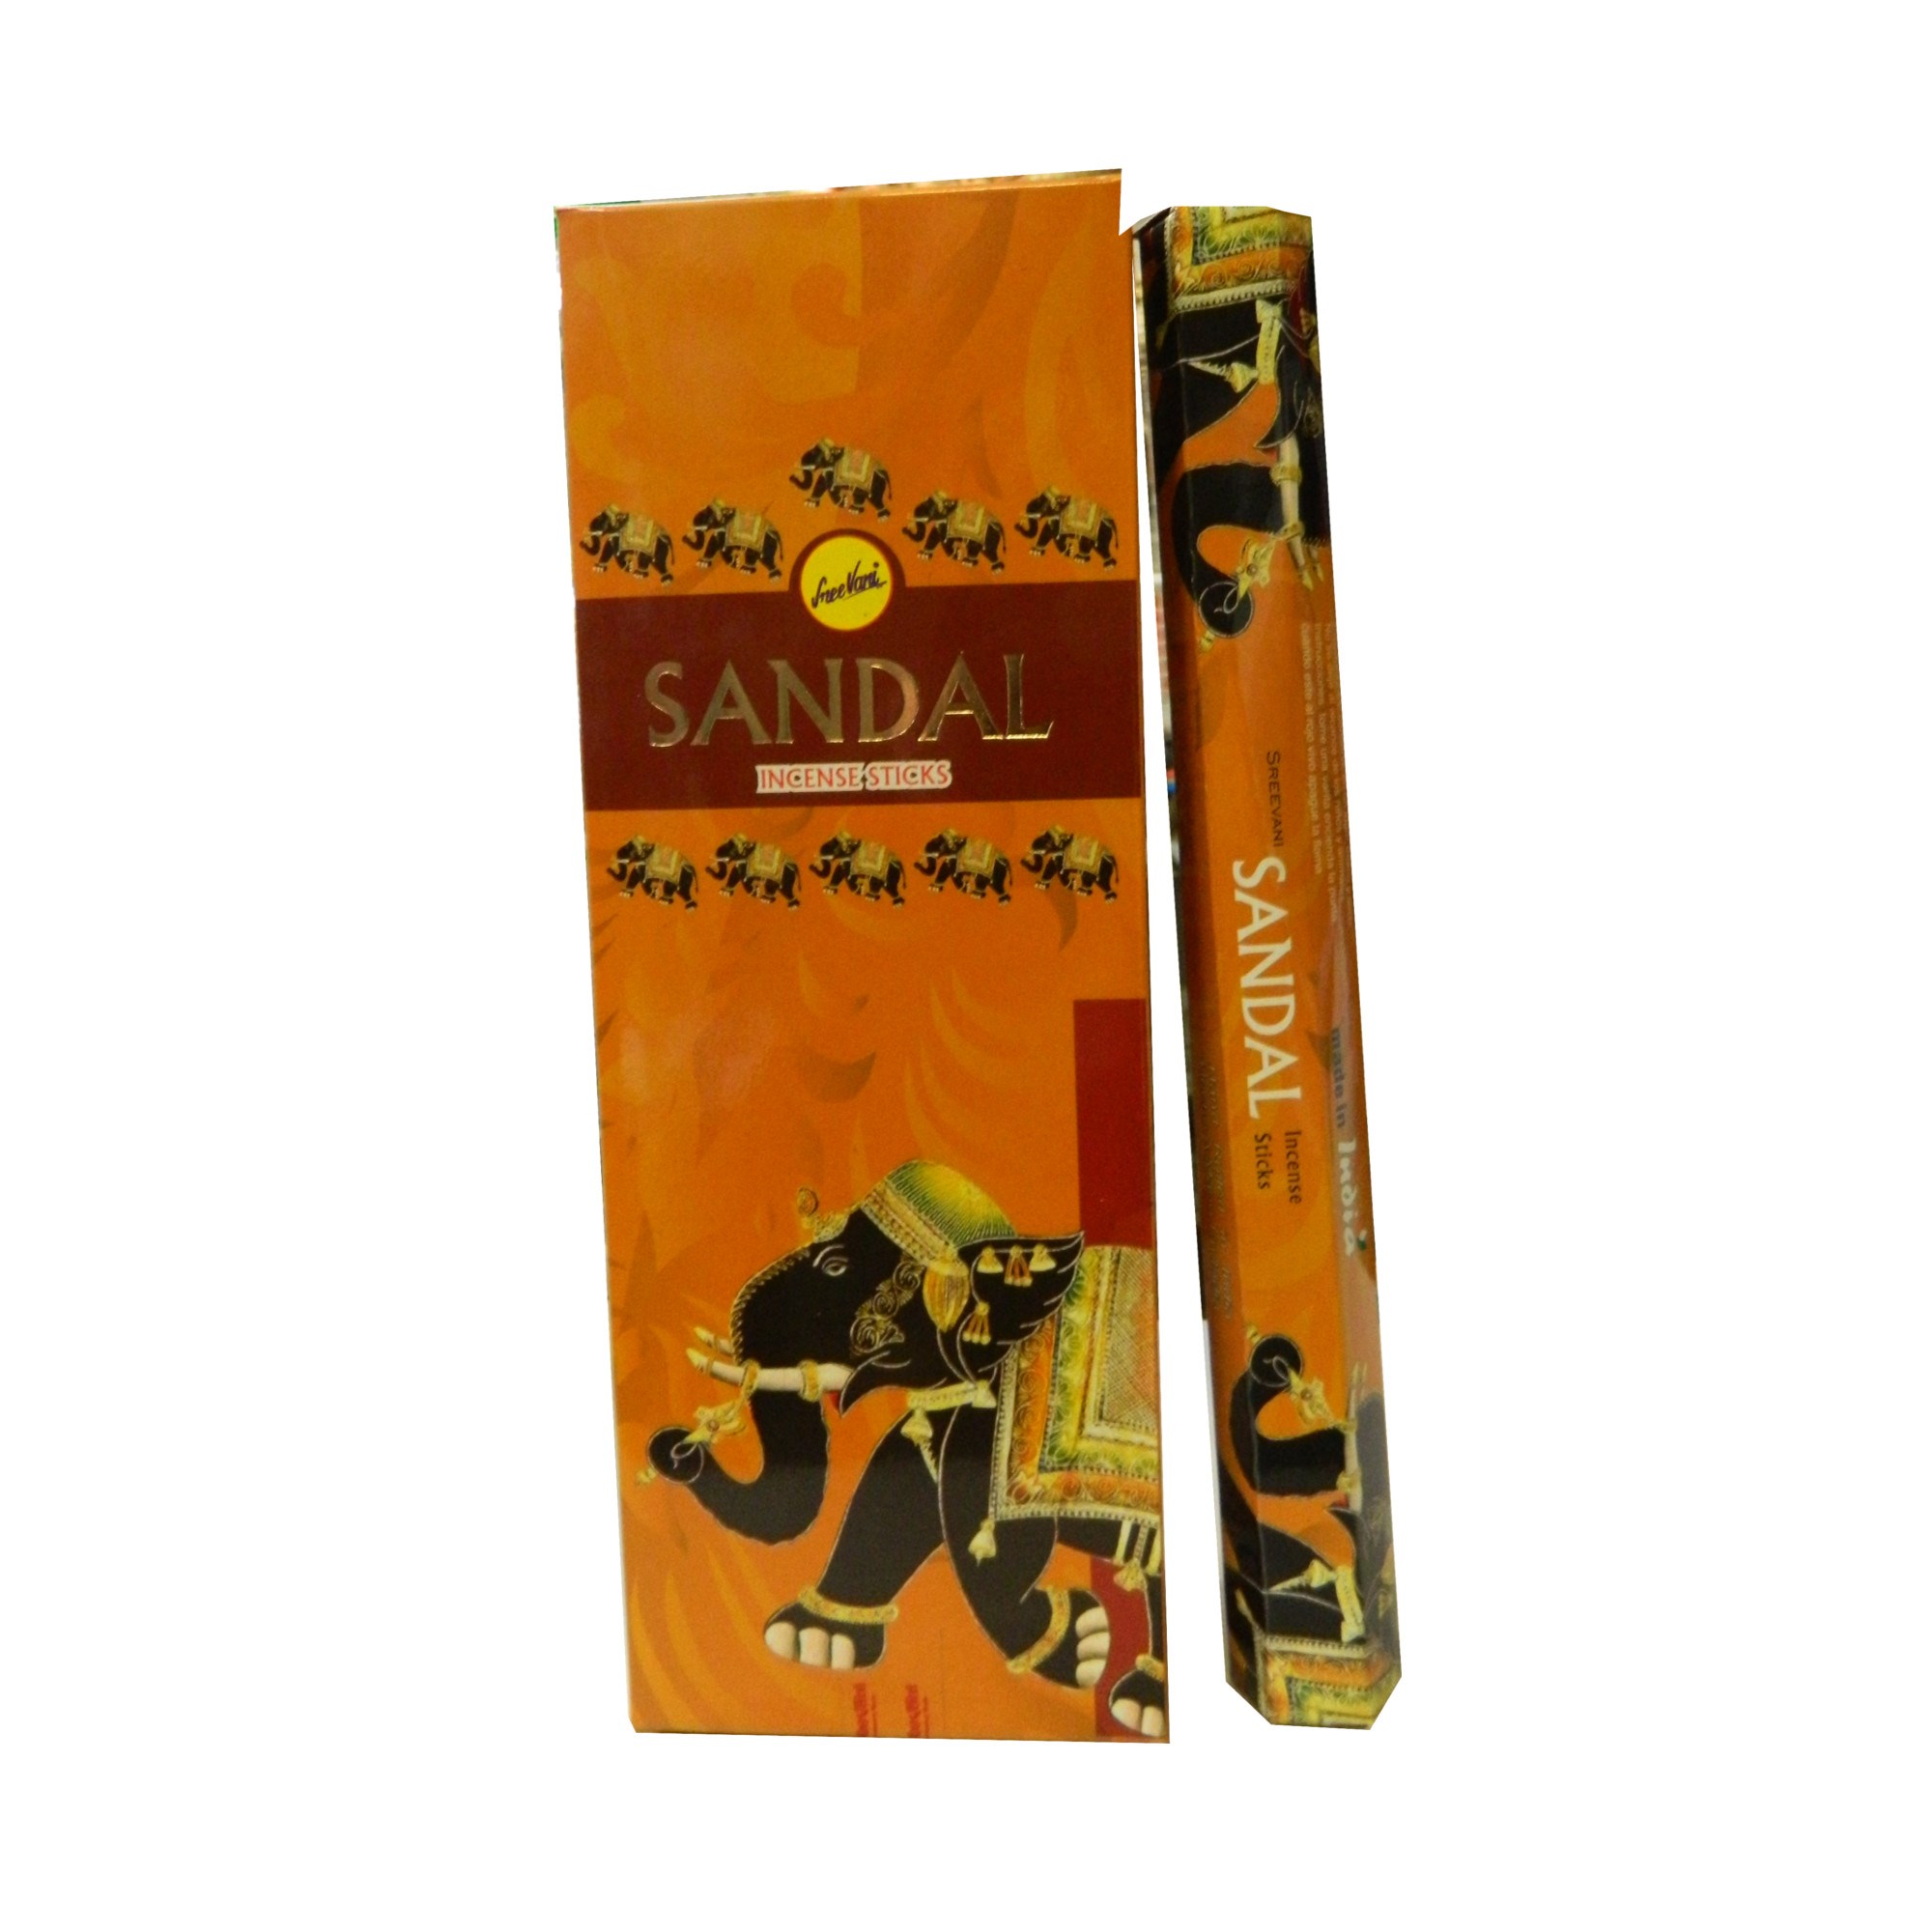 SANDAL von DARSHAN 120 Räucher-Stäbchen BIG PACK Original Indien Incense